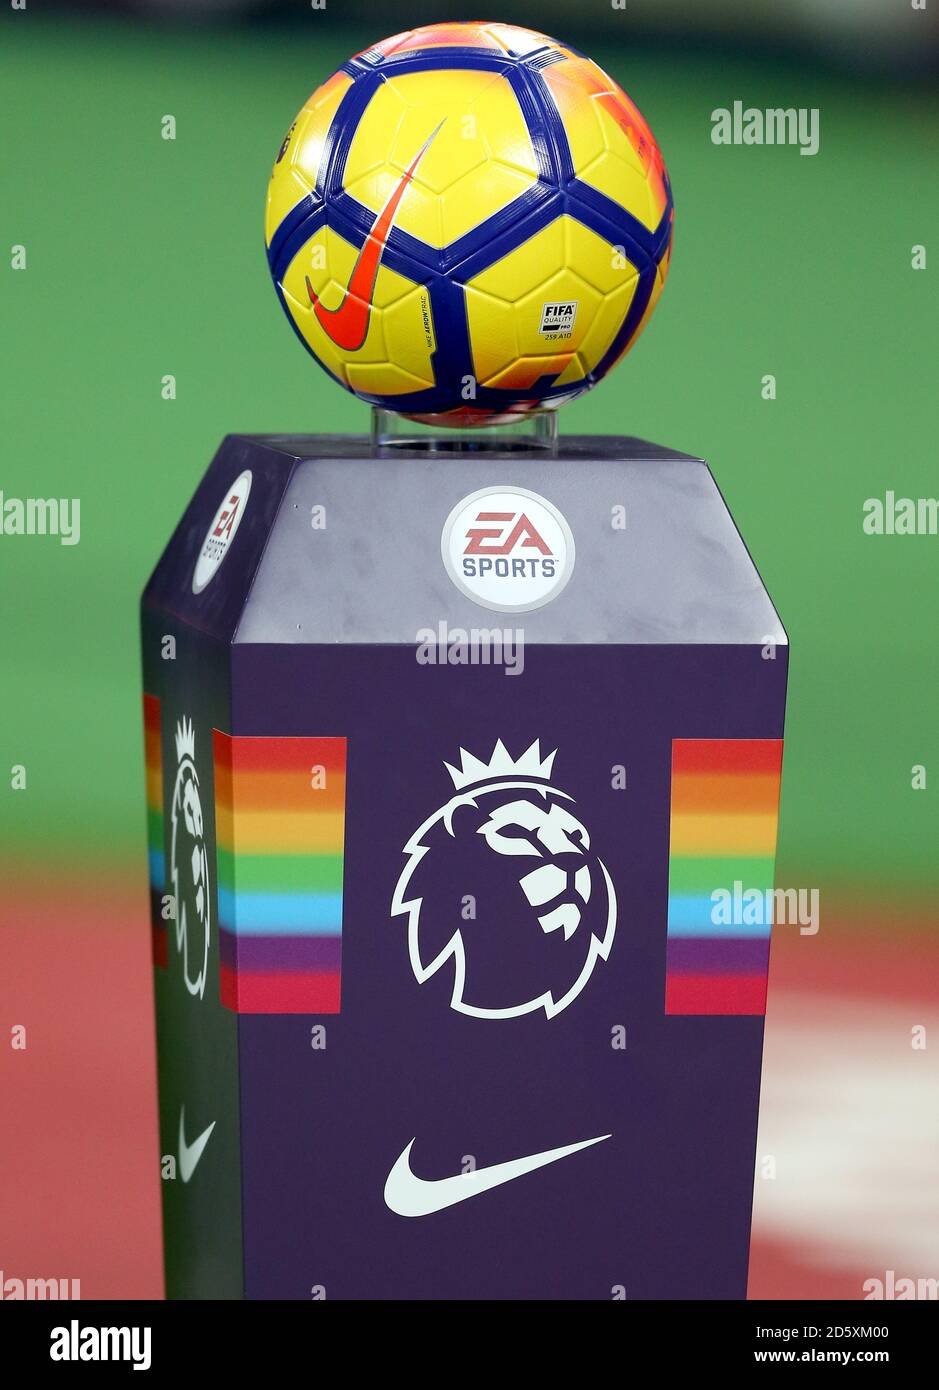 Eine allgemeine Ansicht eines Nike Matchballs auf einem Sockel in  Regenbogenfarben Stockfotografie - Alamy